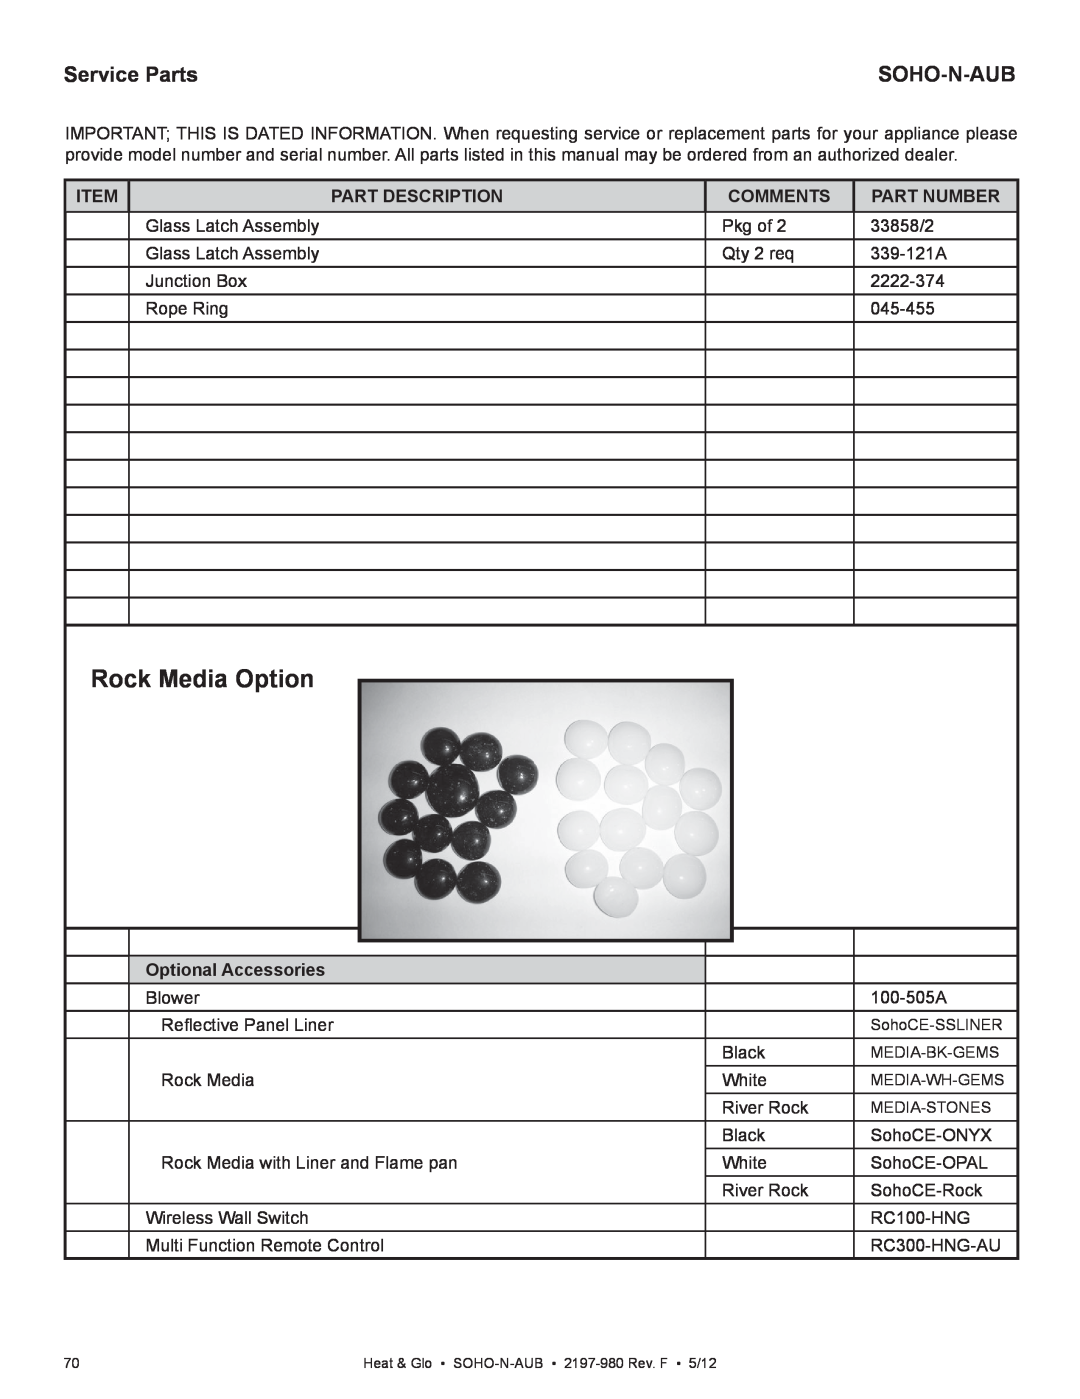 Heat & Glo LifeStyle 2197-980 Rock Media Option, Service Parts, Soho-N-Aub, Item, Part Description, Comments, Part Number 